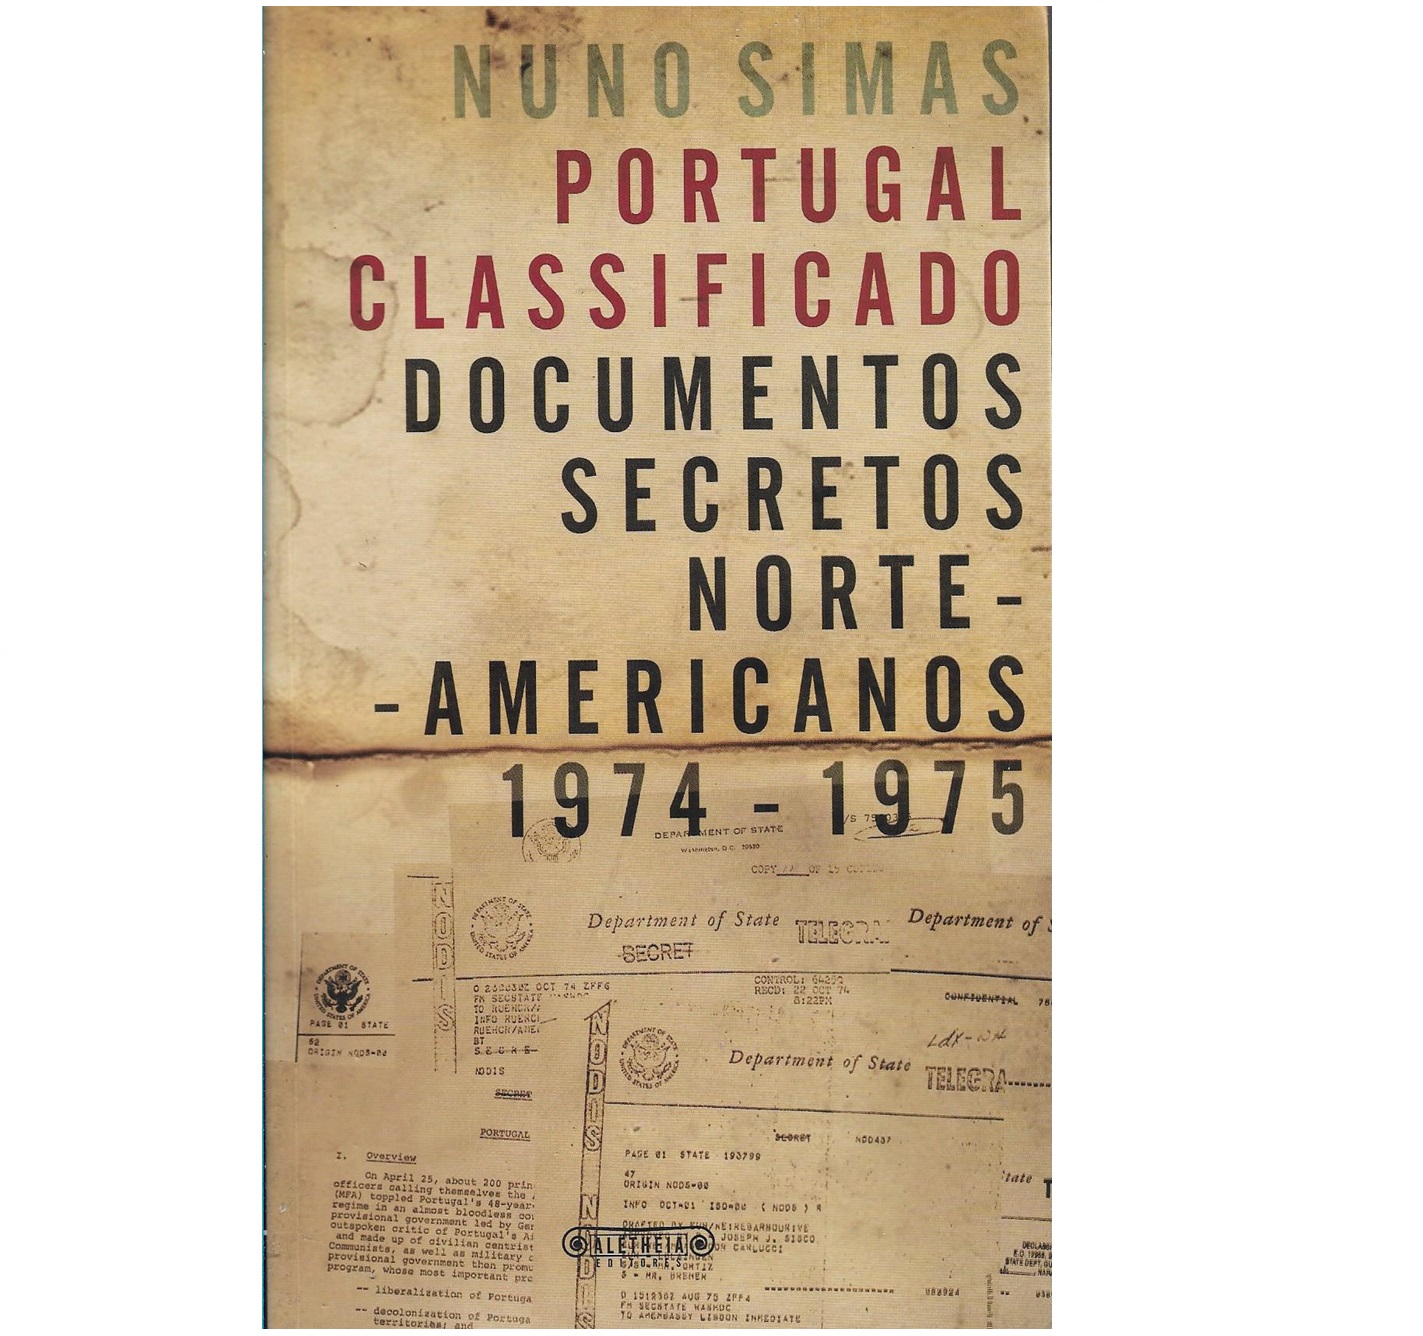 Portugal Classificado. Documentos secretos norte-americanos: 1974-1975